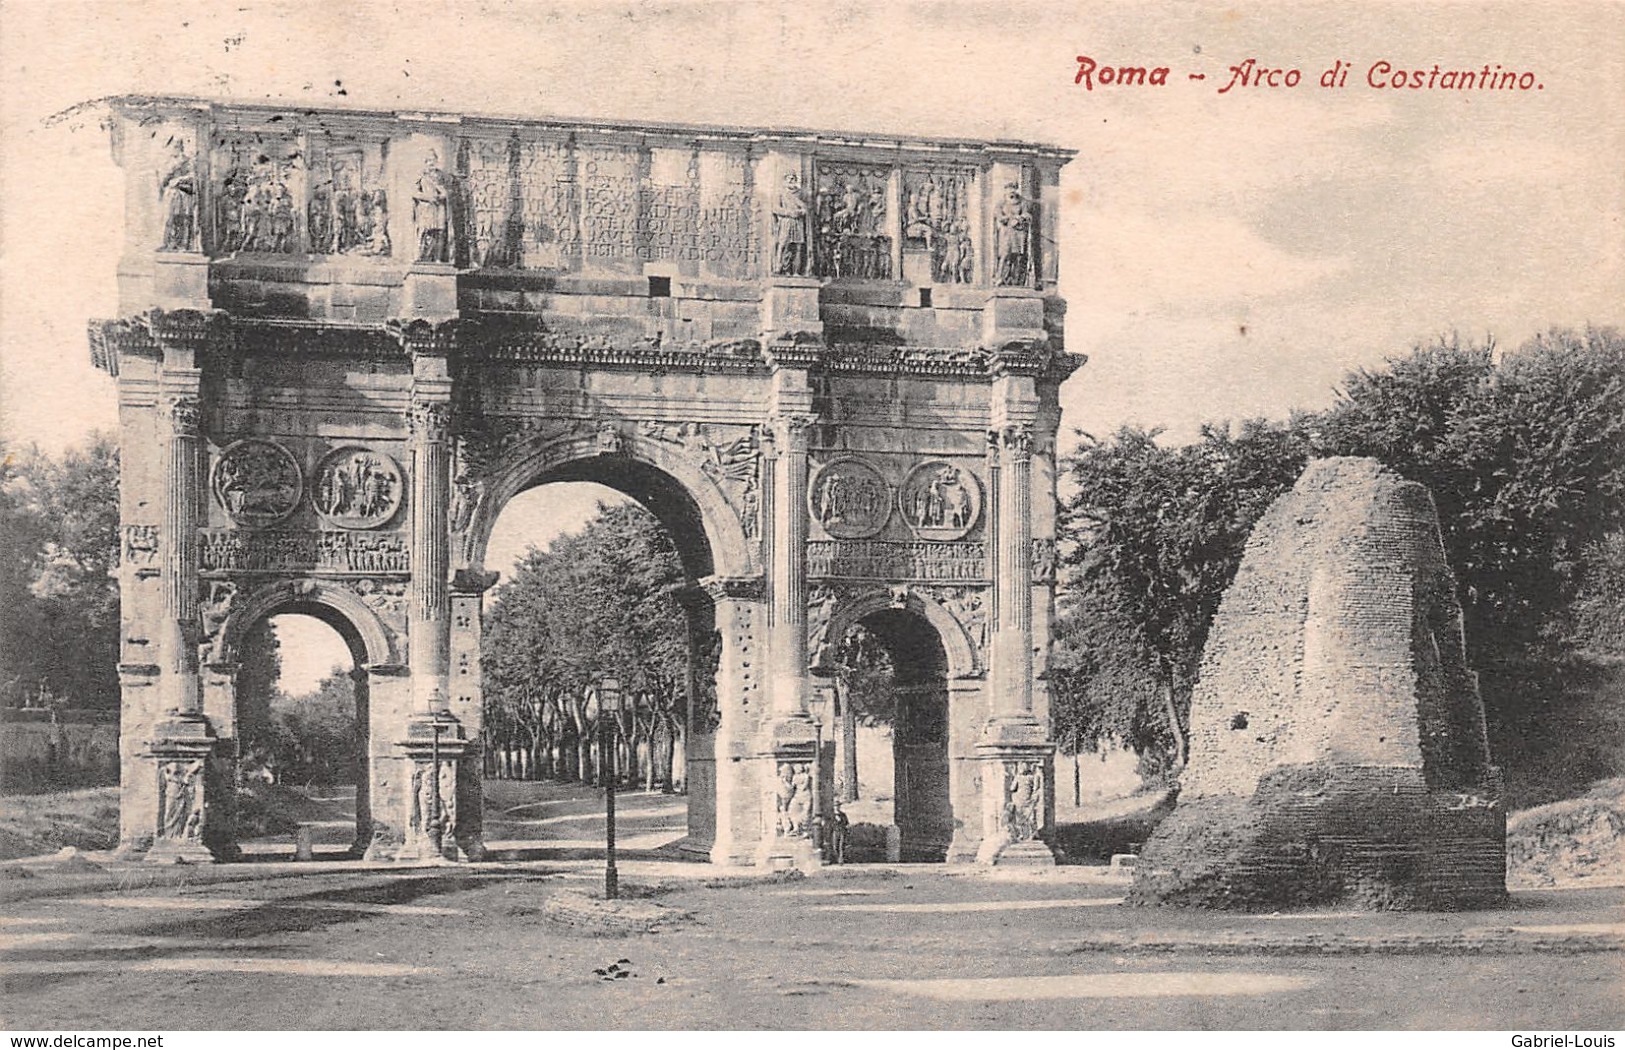 Roma Arco Di Costantino - Andere Monumente & Gebäude